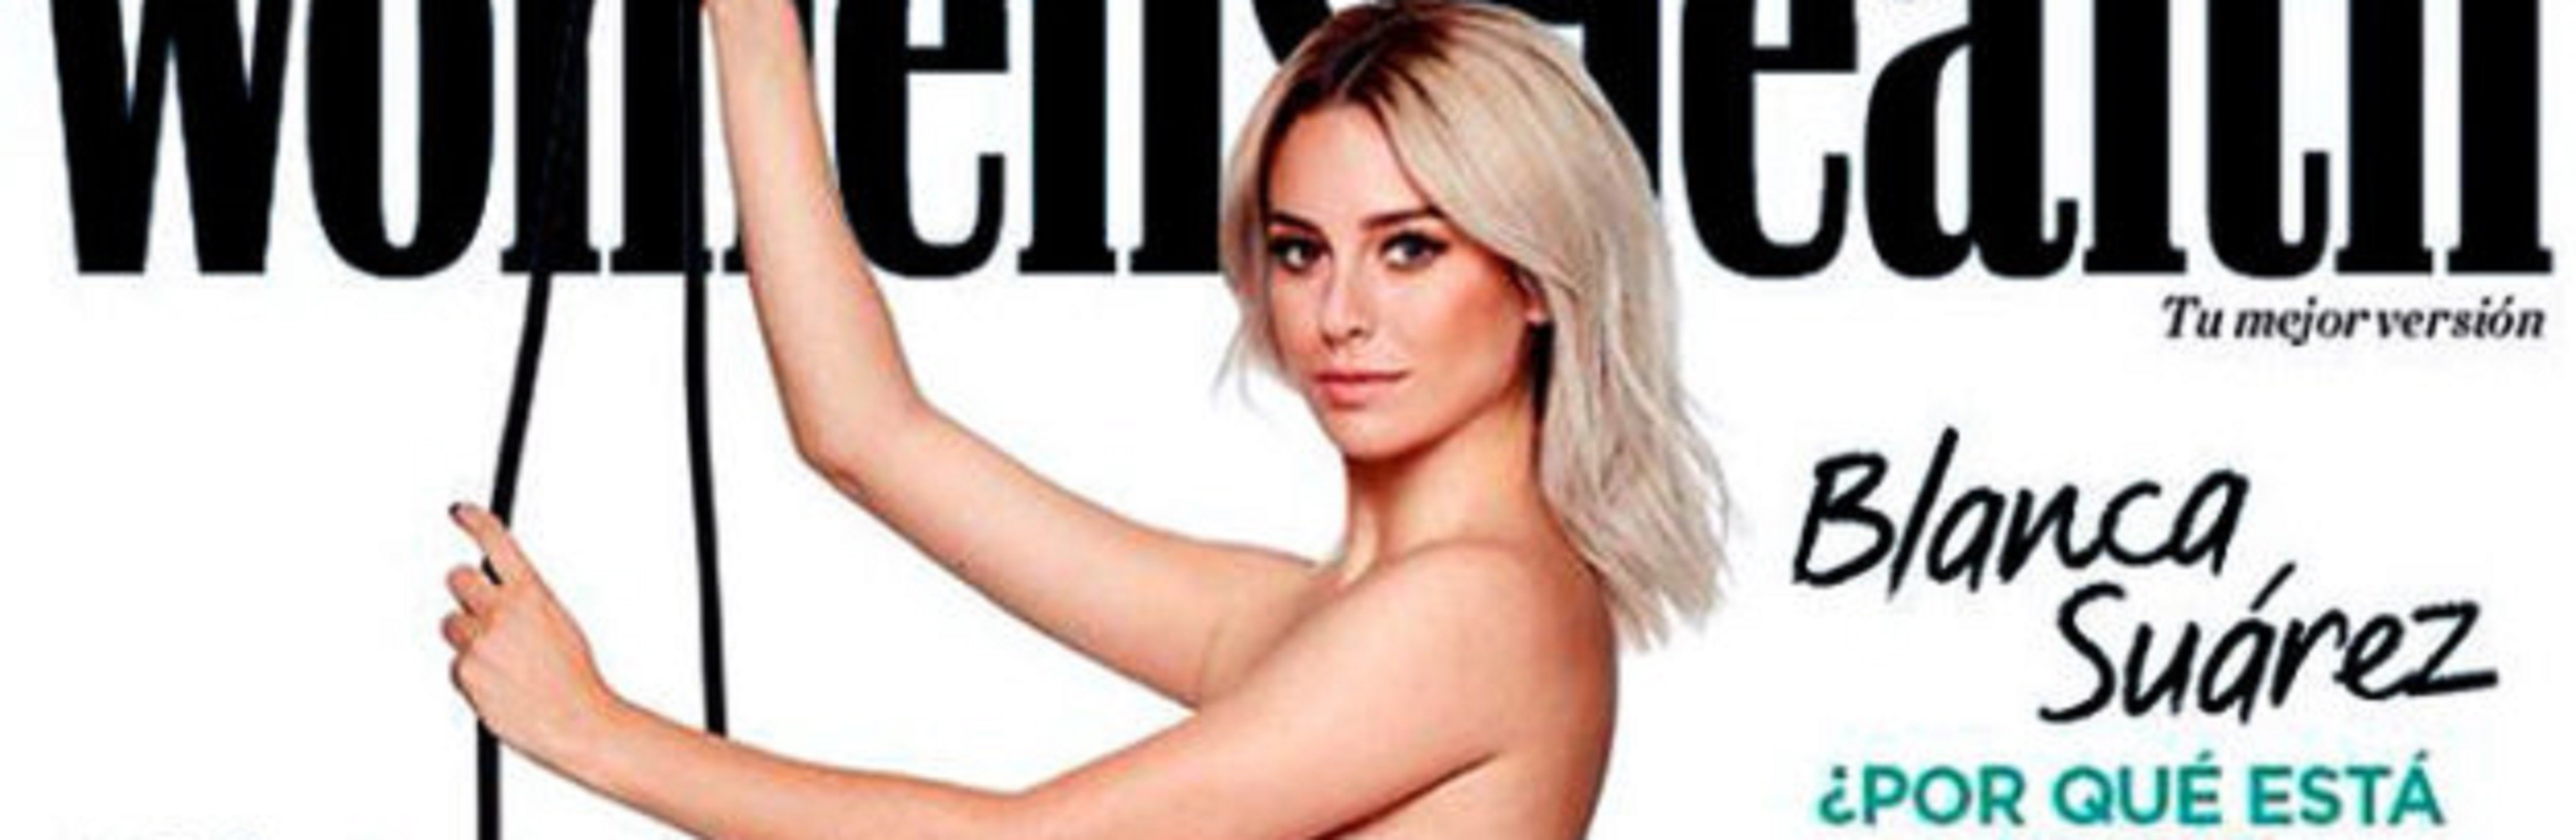 Blanca Suárez totalmente desnuda en la portada de una revista